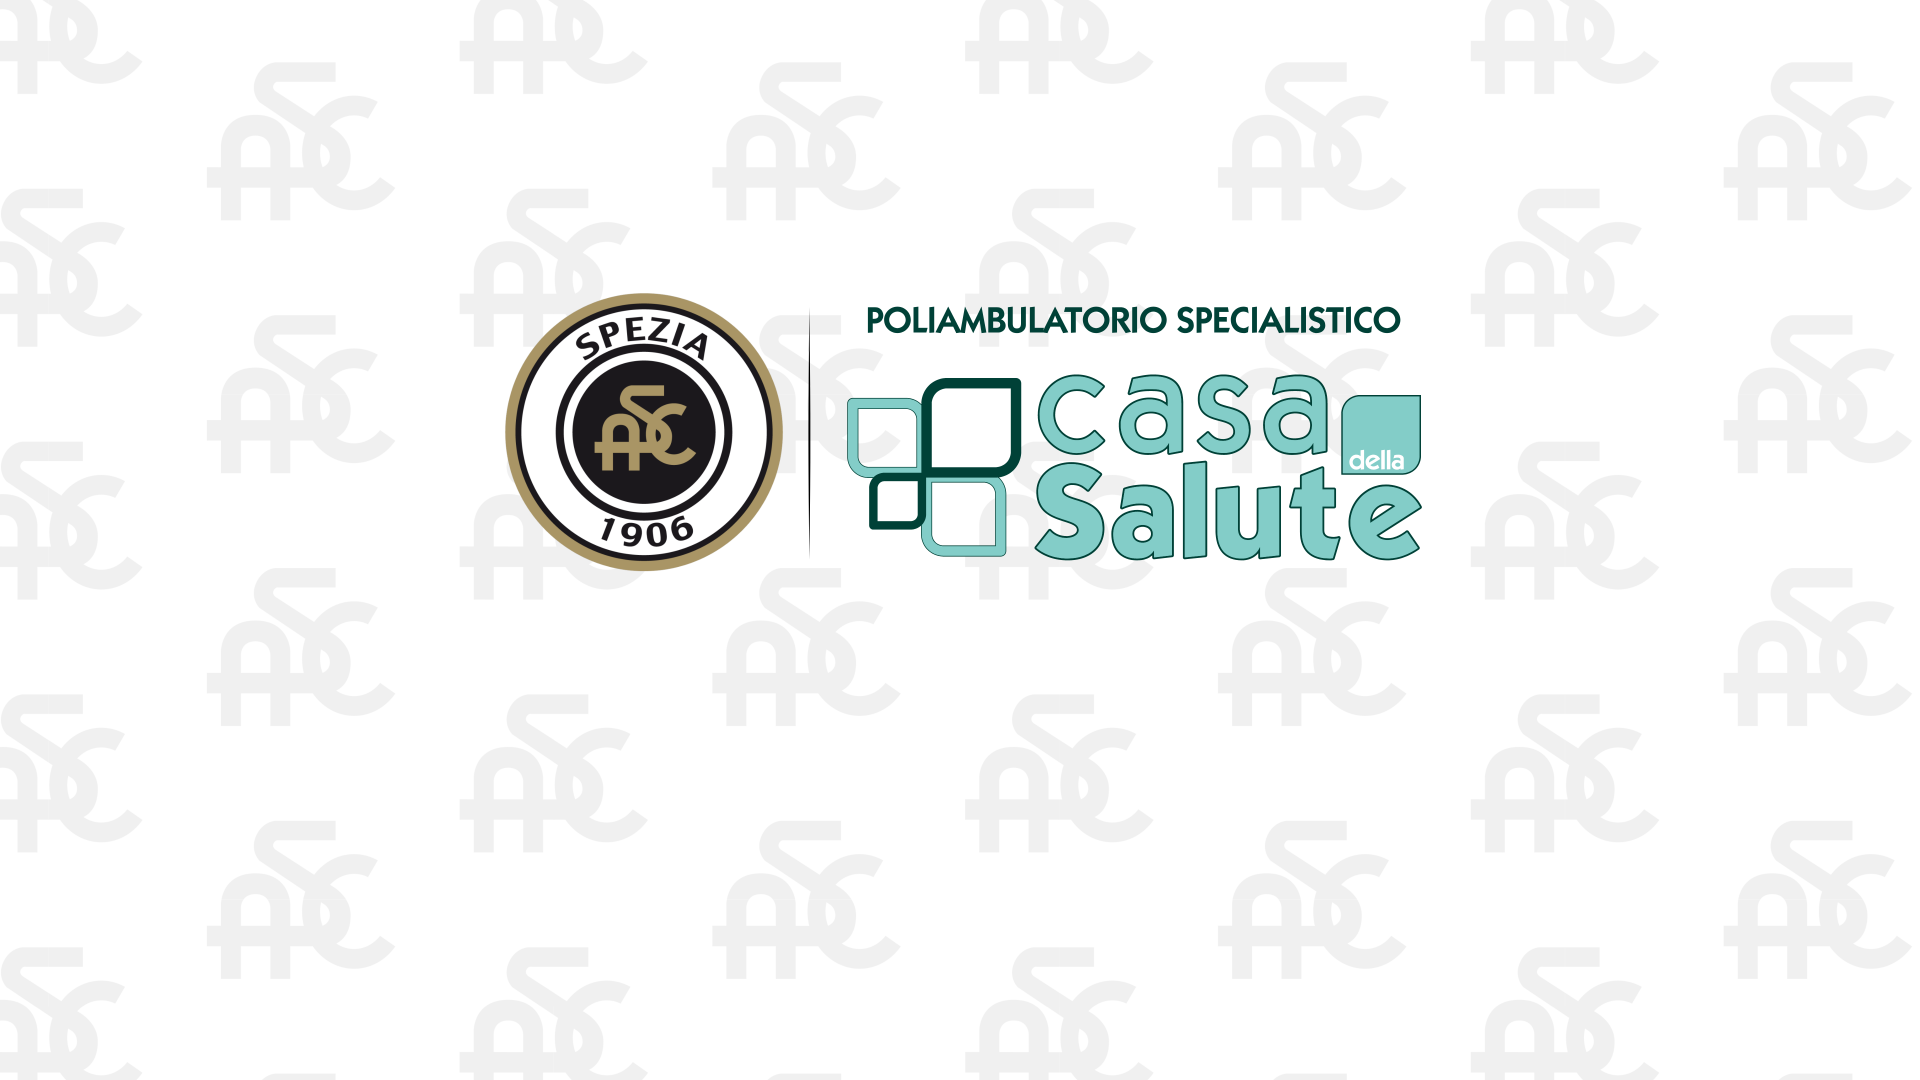 Spezia Calcio and Casa della Salute renew their Partnership